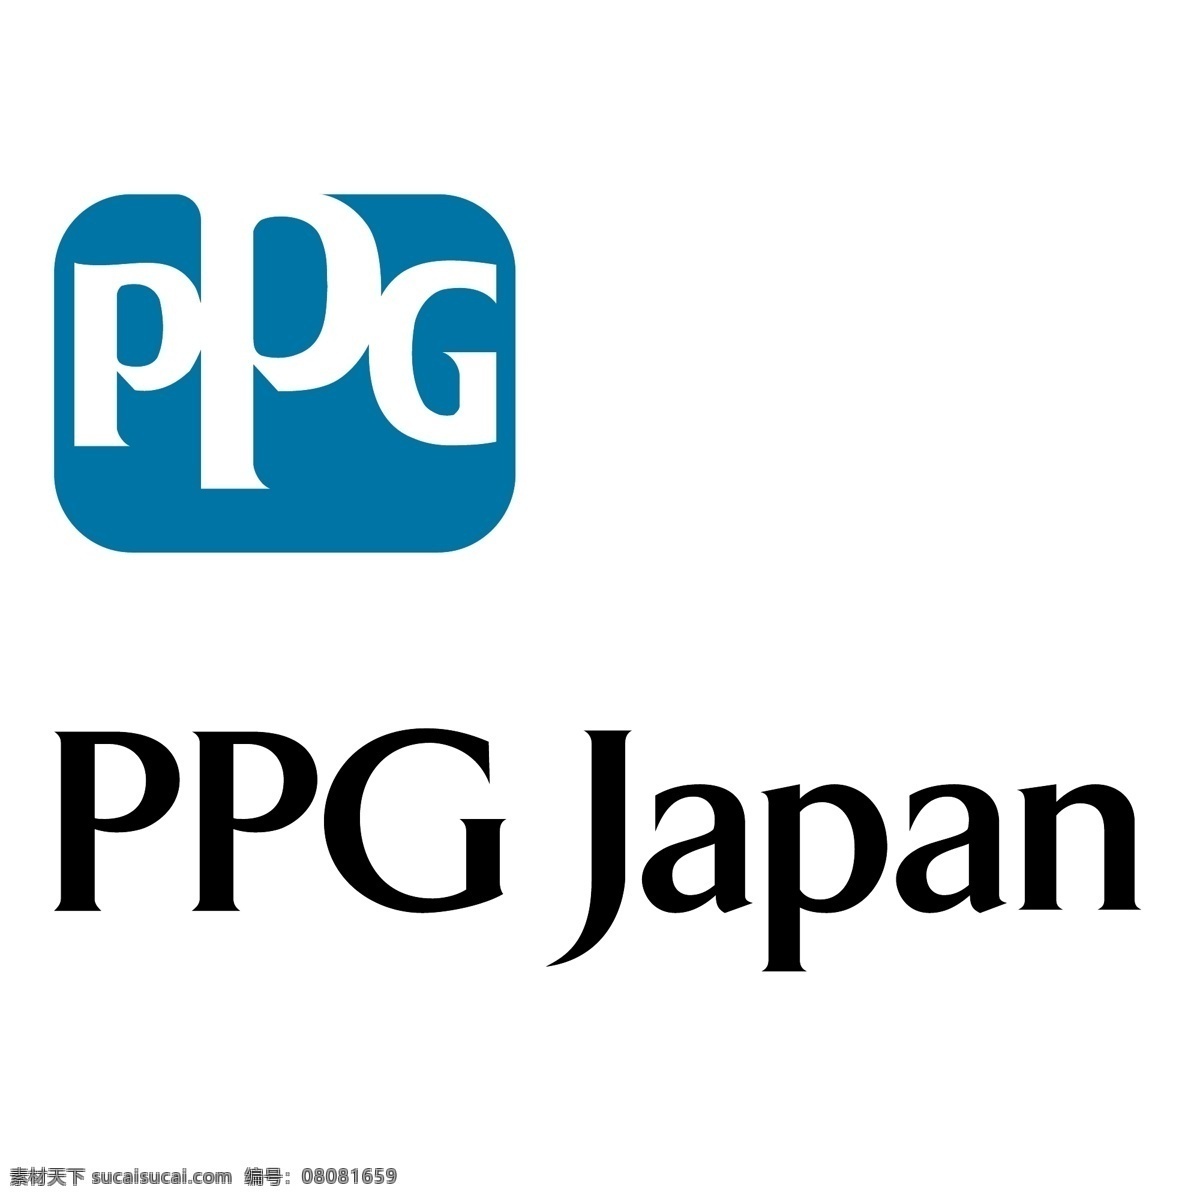 ppg 日本 标识 公司 免费 品牌 品牌标识 商标 矢量标志下载 免费矢量标识 矢量 psd源文件 logo设计